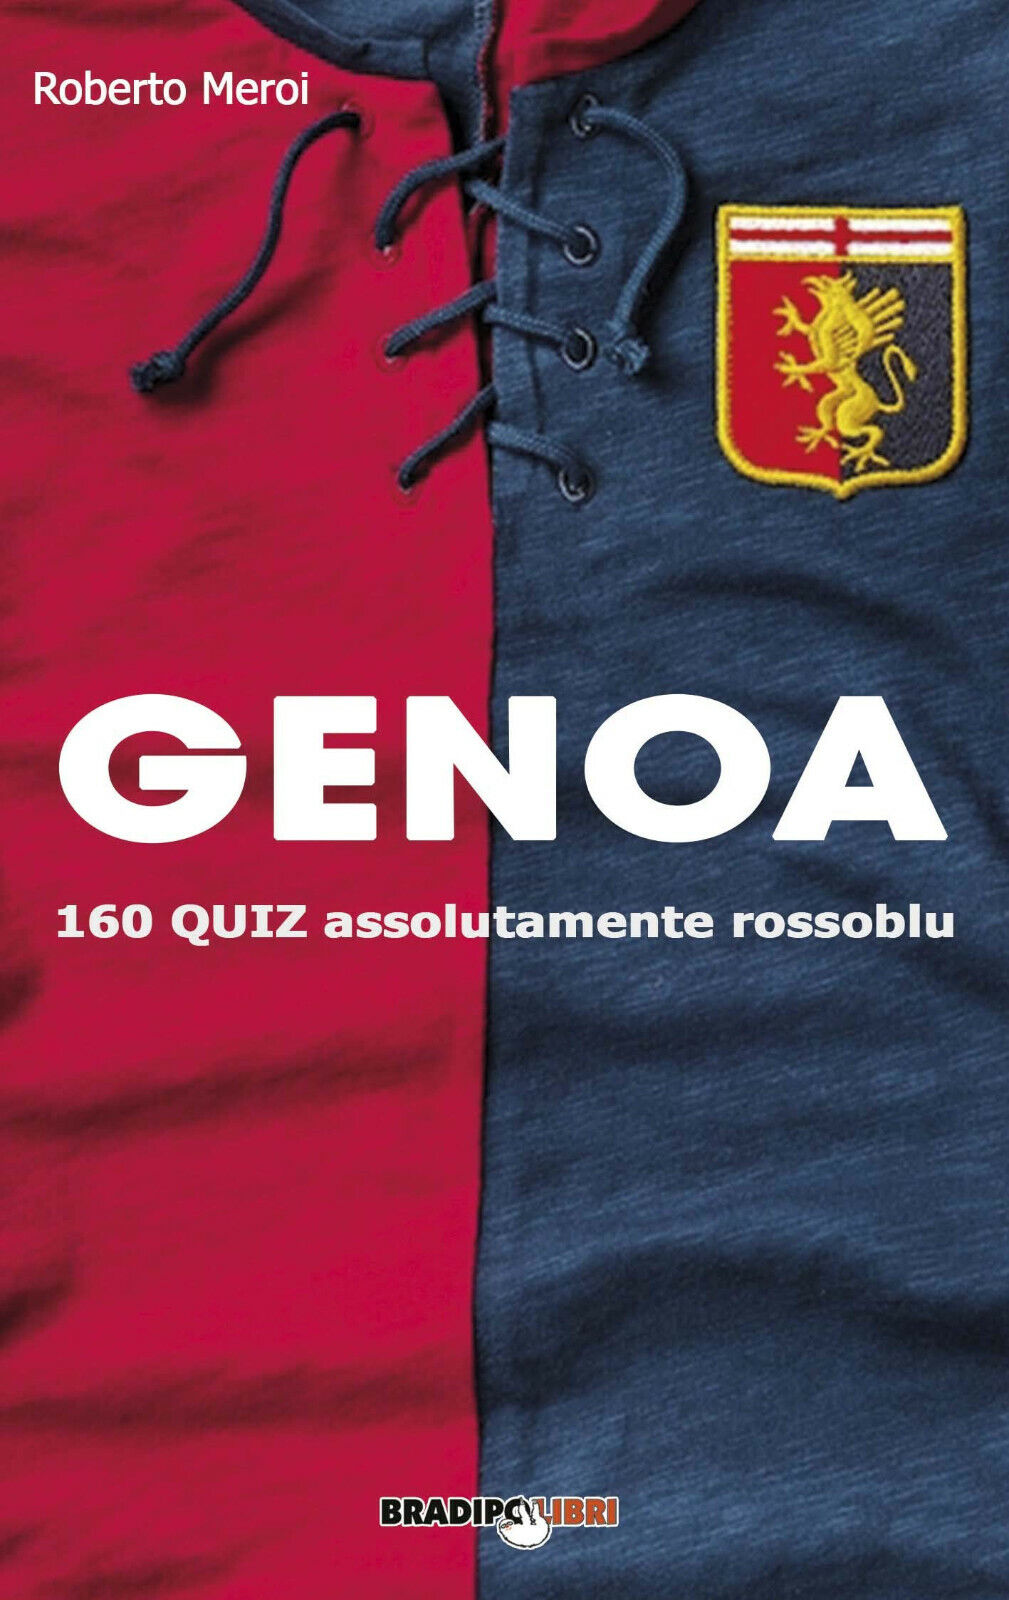 Genoa. 160 quiz assolutamente rossoblu - Roberto Meroi - Bradipolibri, 2019 libro usato